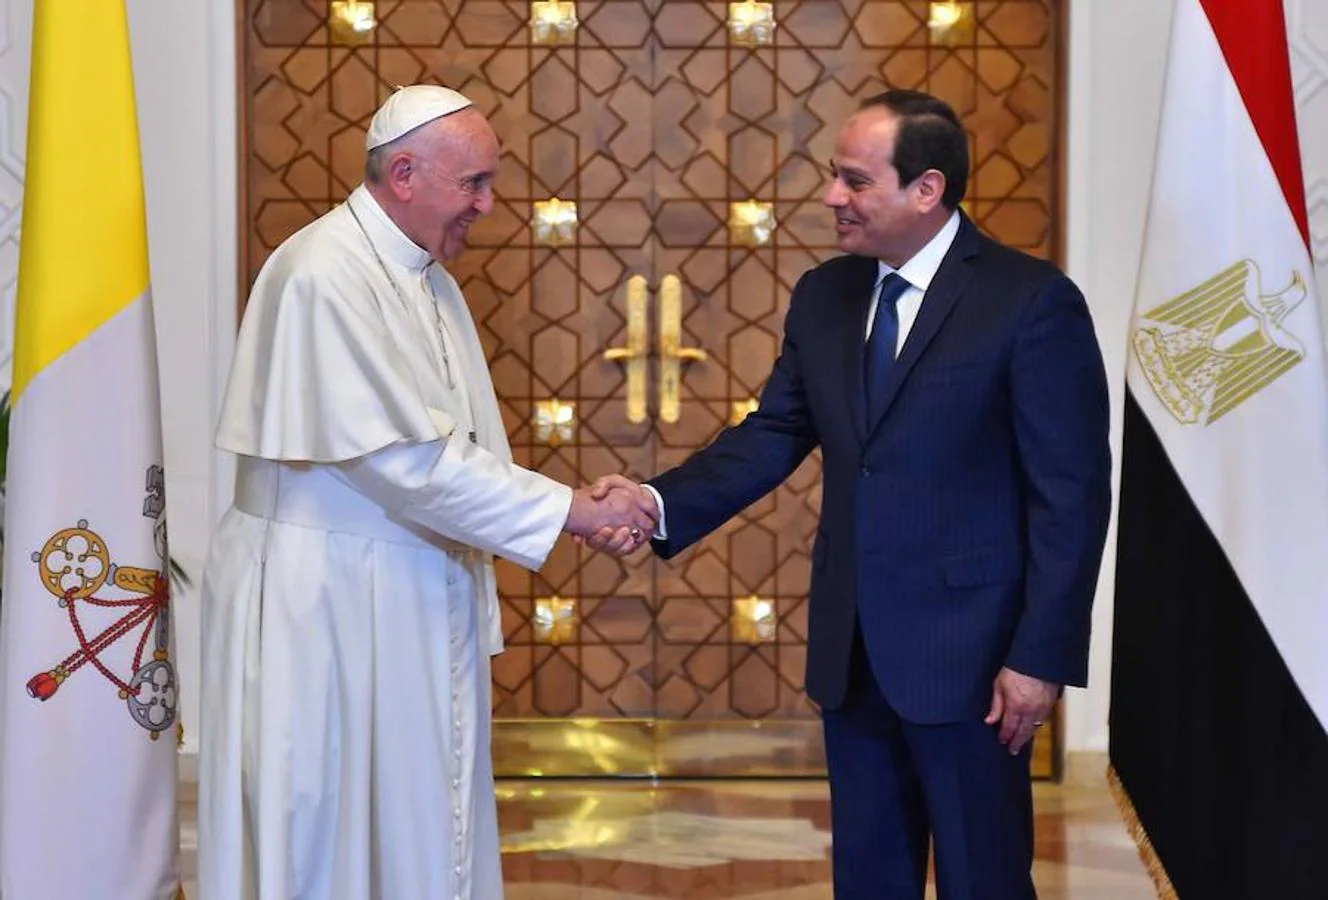 Imagen donde se observa al Papa Francisco junto al presidente egipcio Abdel Fattah al-Sisi en el palacio presidencial de El Cairo. Reuters